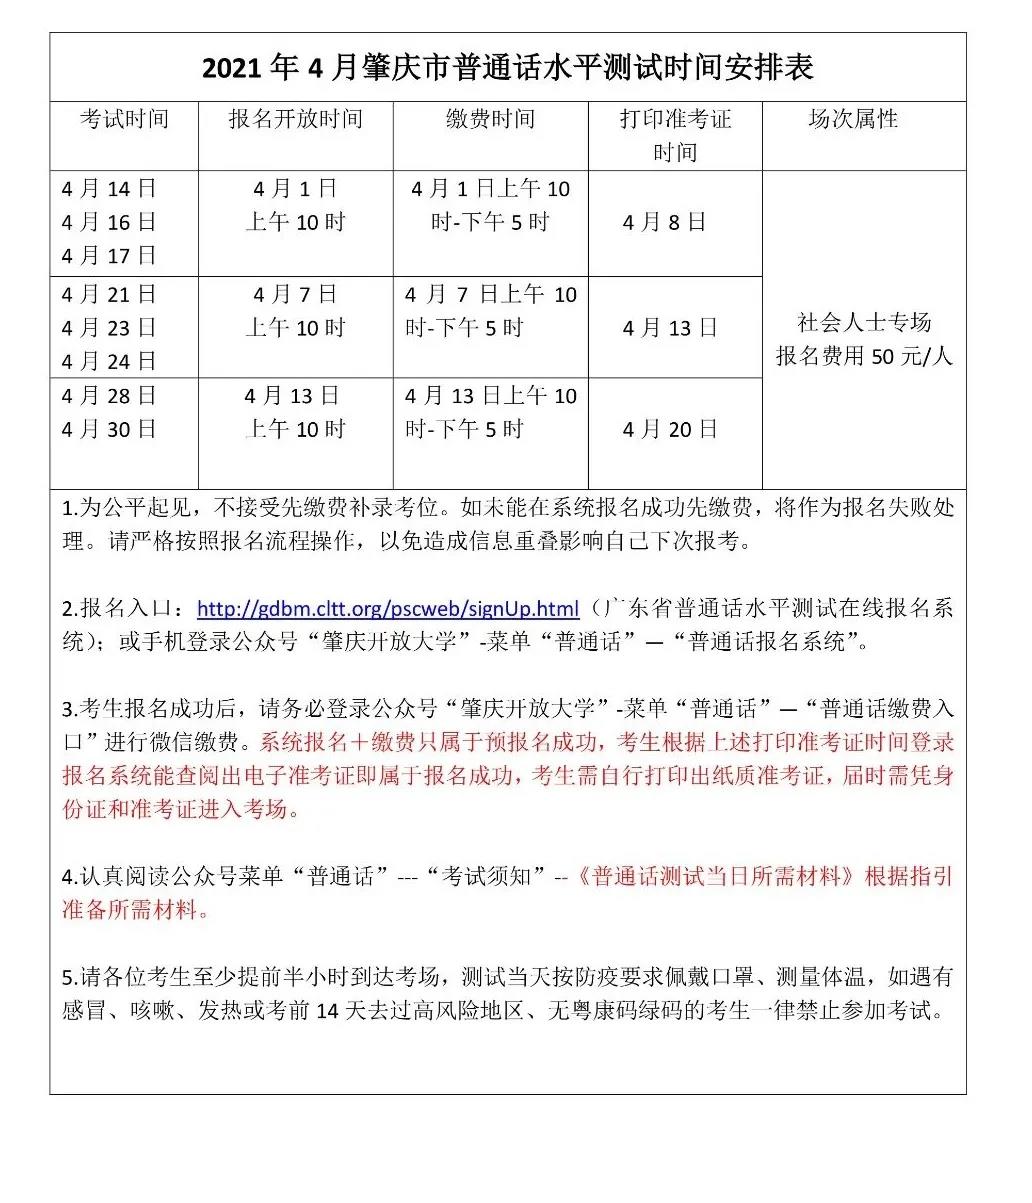 肇庆市2021年4月普通话水平测试时间安排表